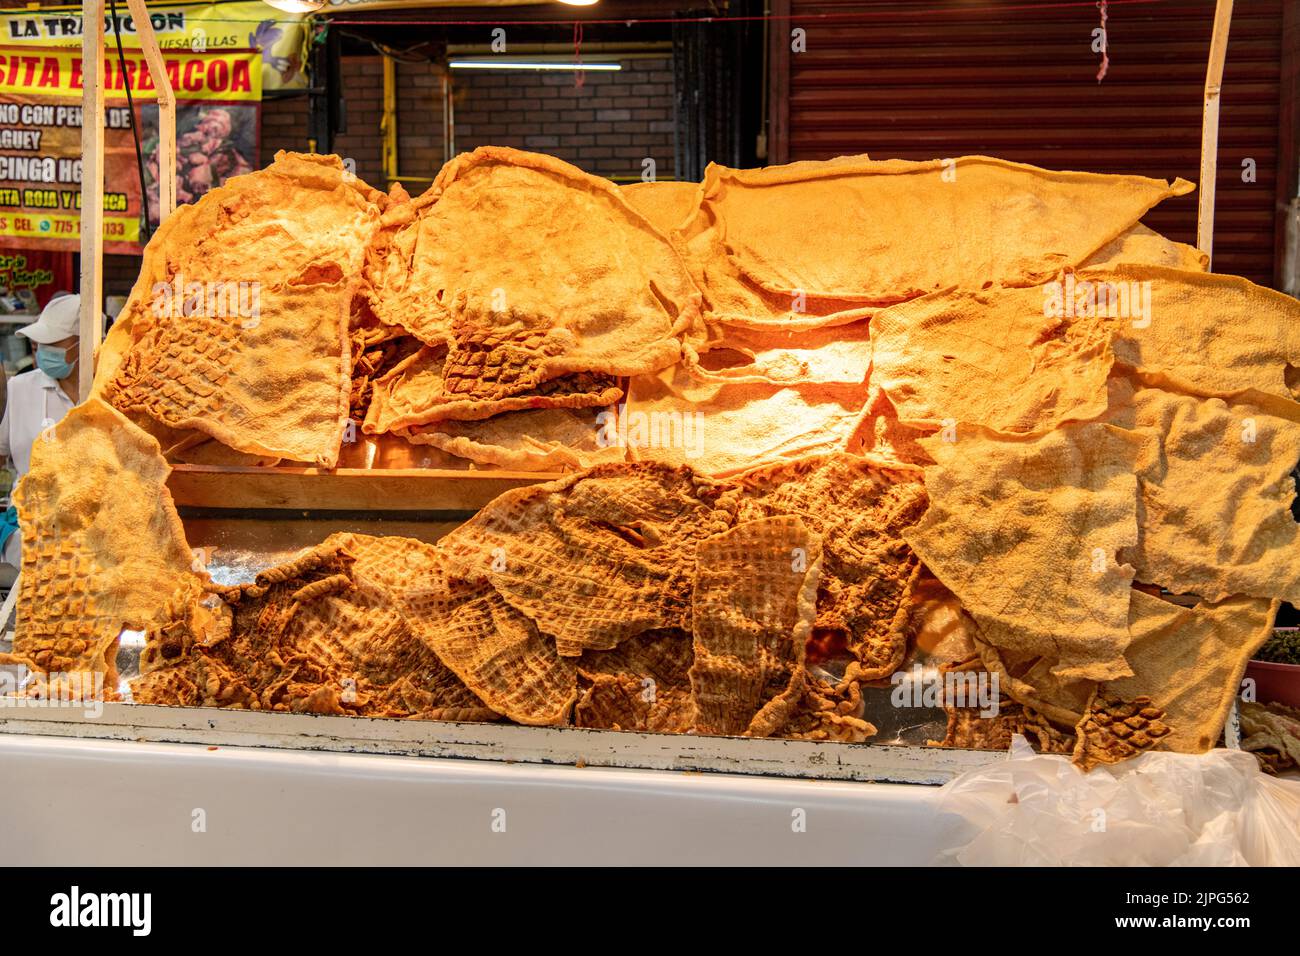 Pork chicharrones at Coyoacan Market in Mexico City, Mexico Stock Photo